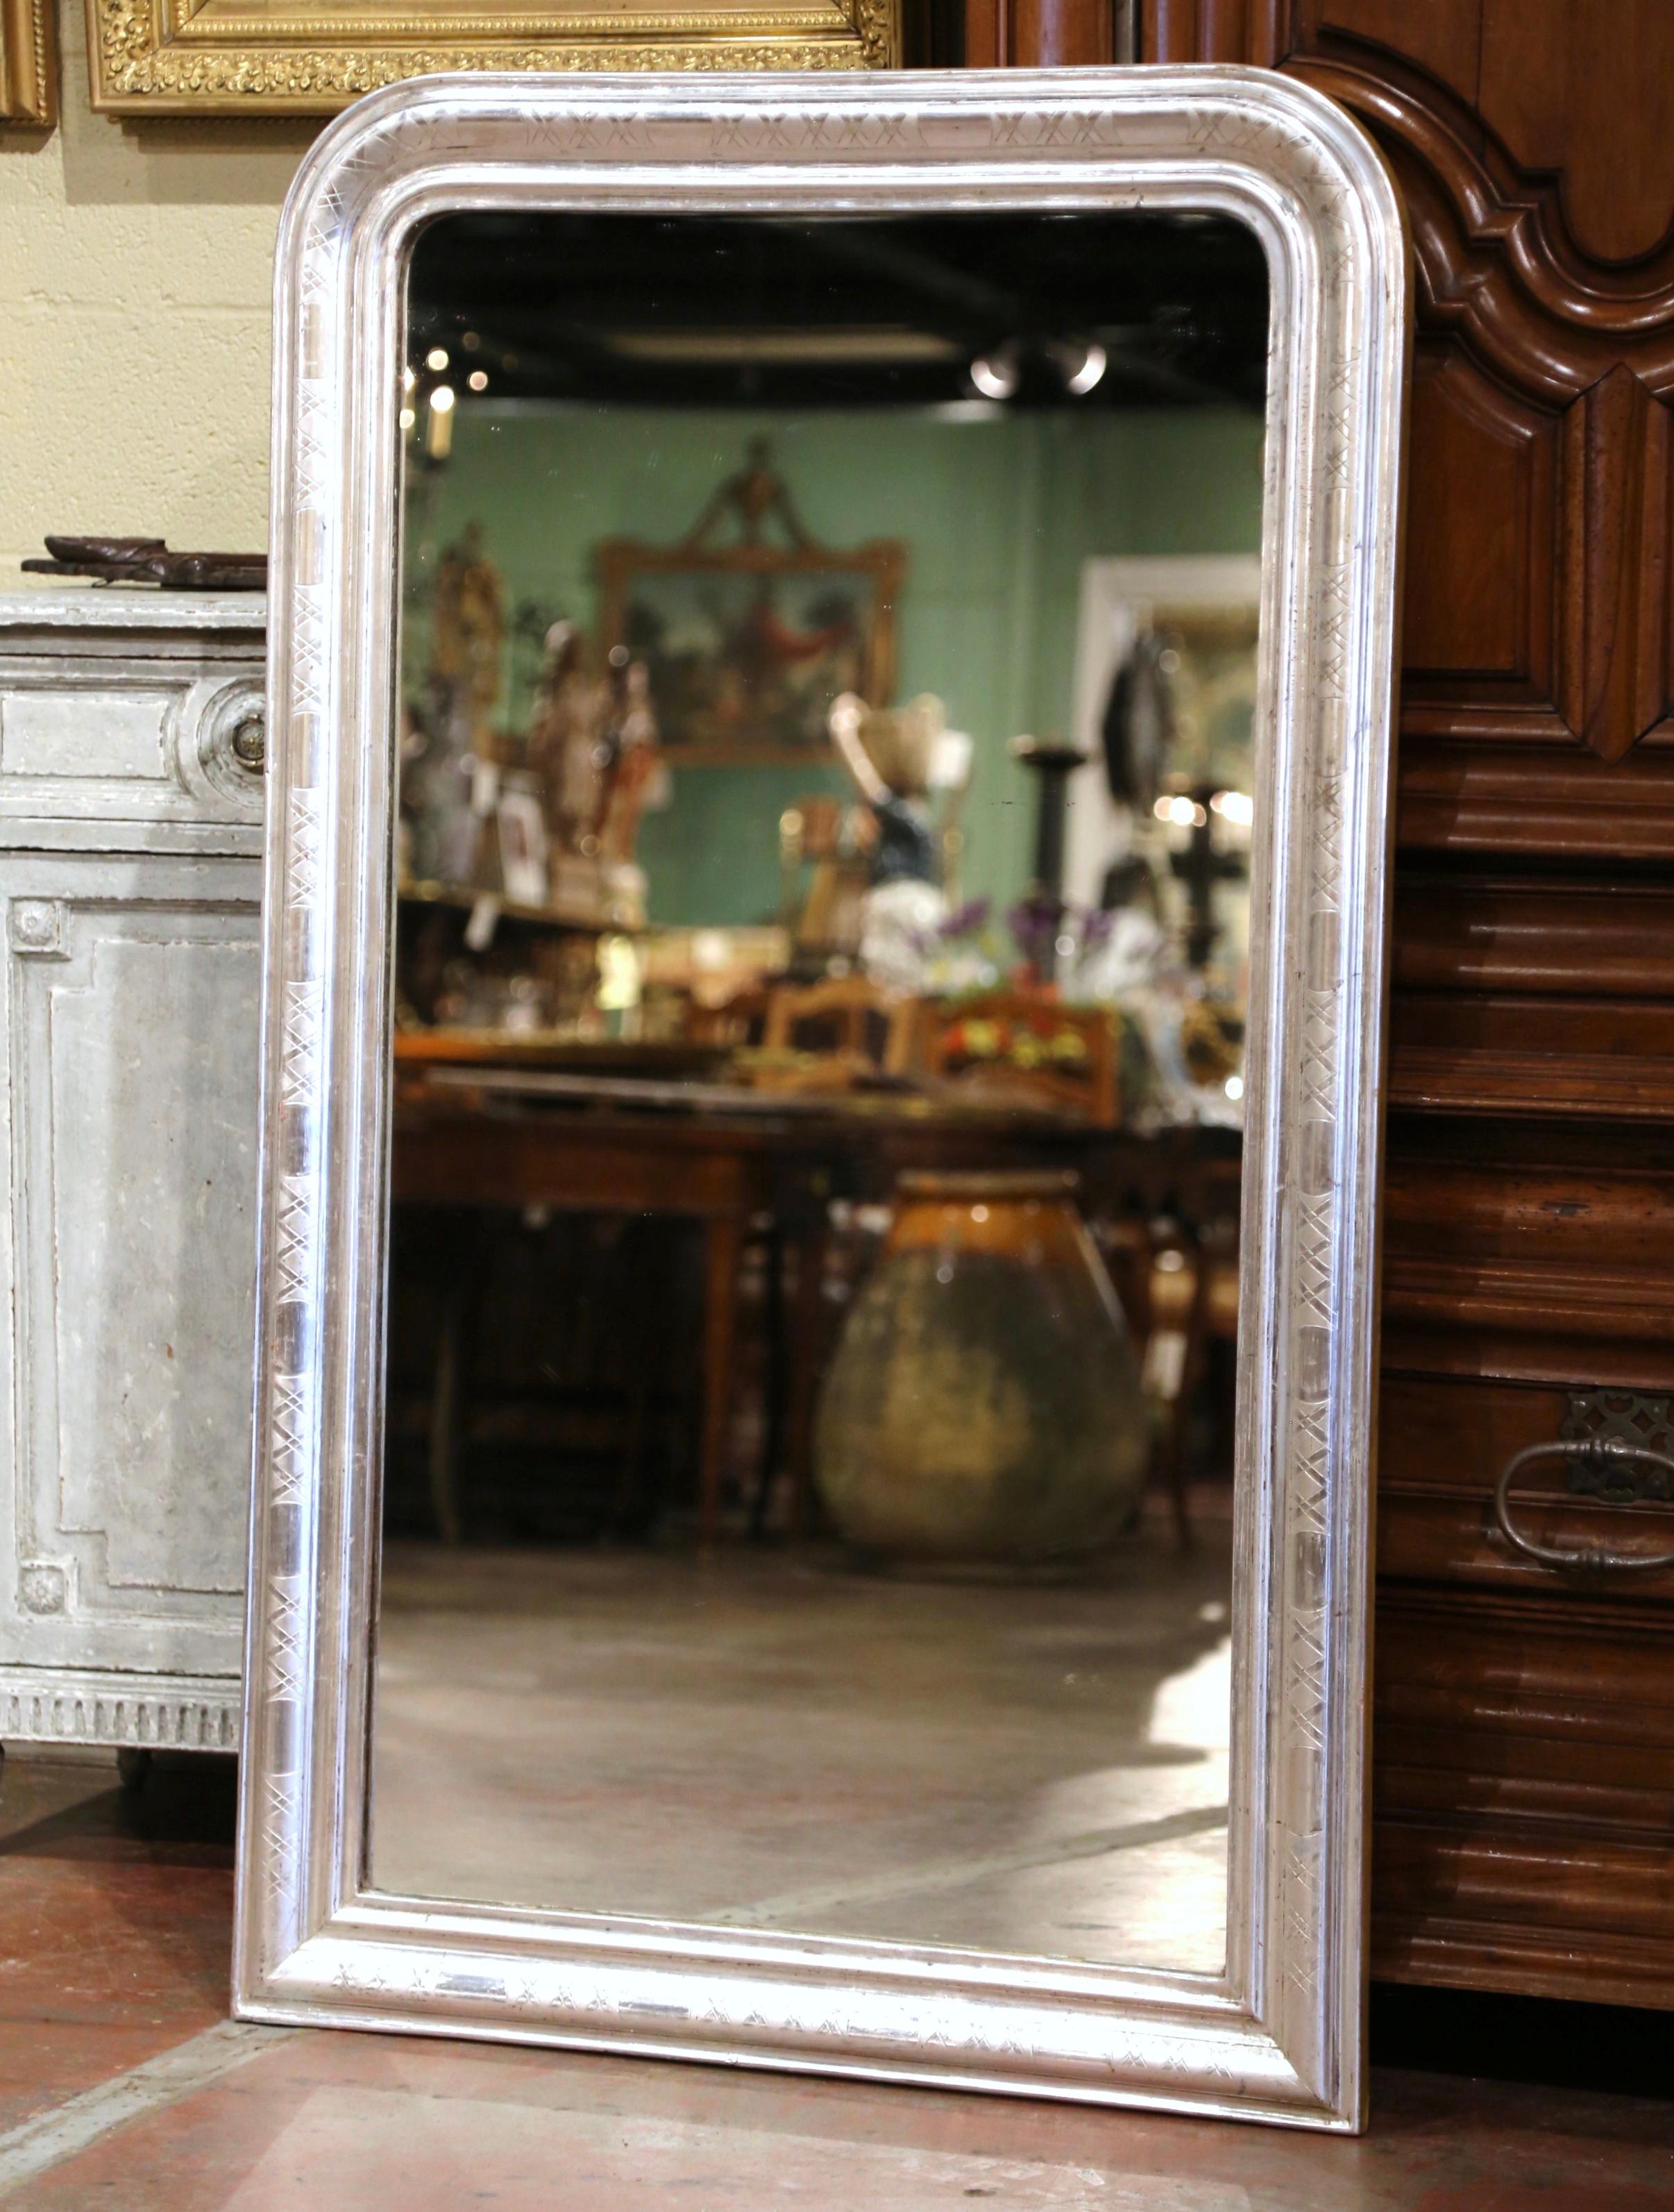 Der große antike Spiegel wurde um 1880 in der Region Burgund in Frankreich hergestellt und hat traditionelle, zeitlose Linien mit abgerundeten Ecken. Der rechteckige Rahmen ist mit einem luxuriösen Blattsilber-Finish über einem diskreten, zweifarbig